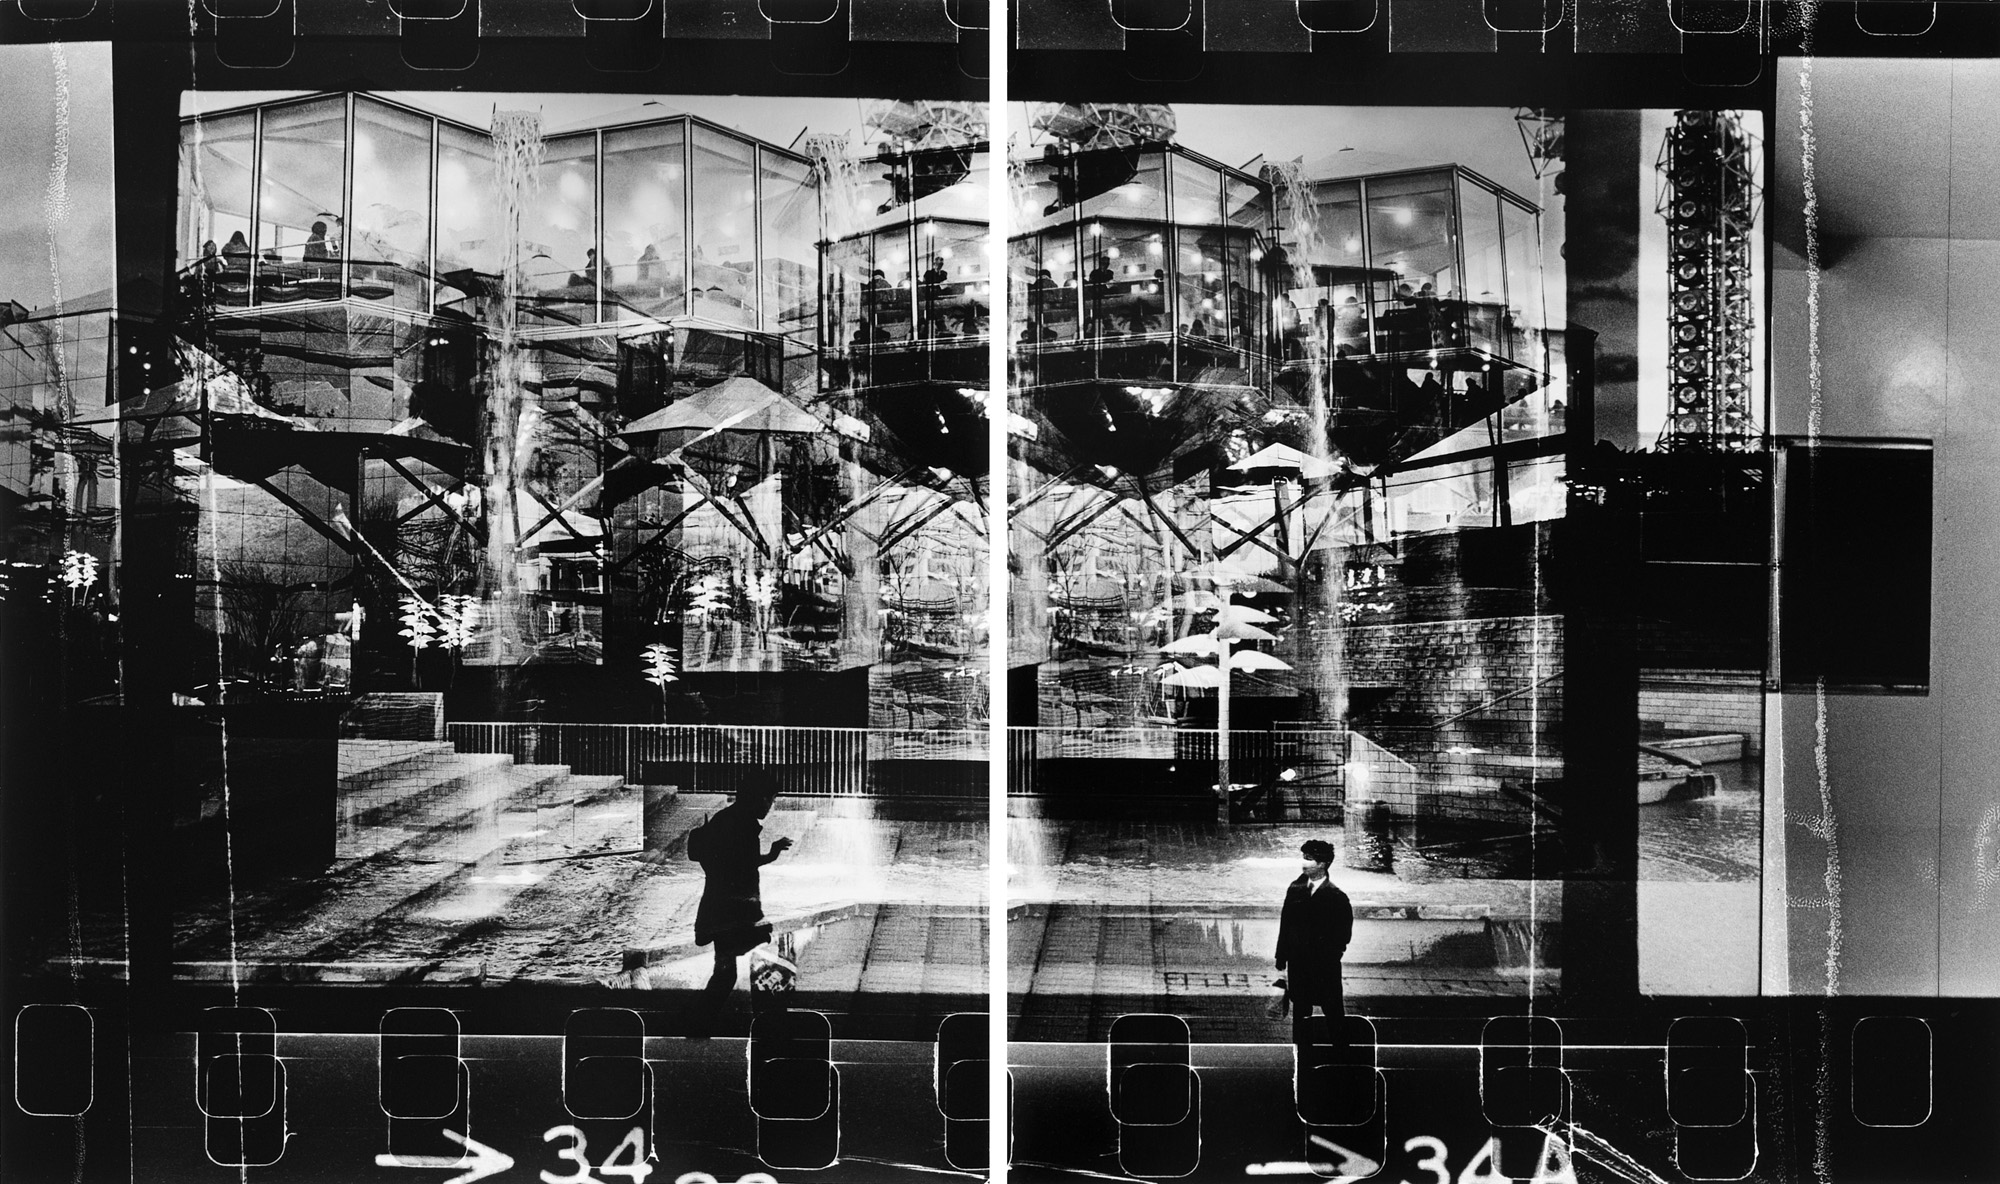 Artist Photographer Timm Rautert, Parrotta Contemporary Art, Diptych, Japan, Osaka